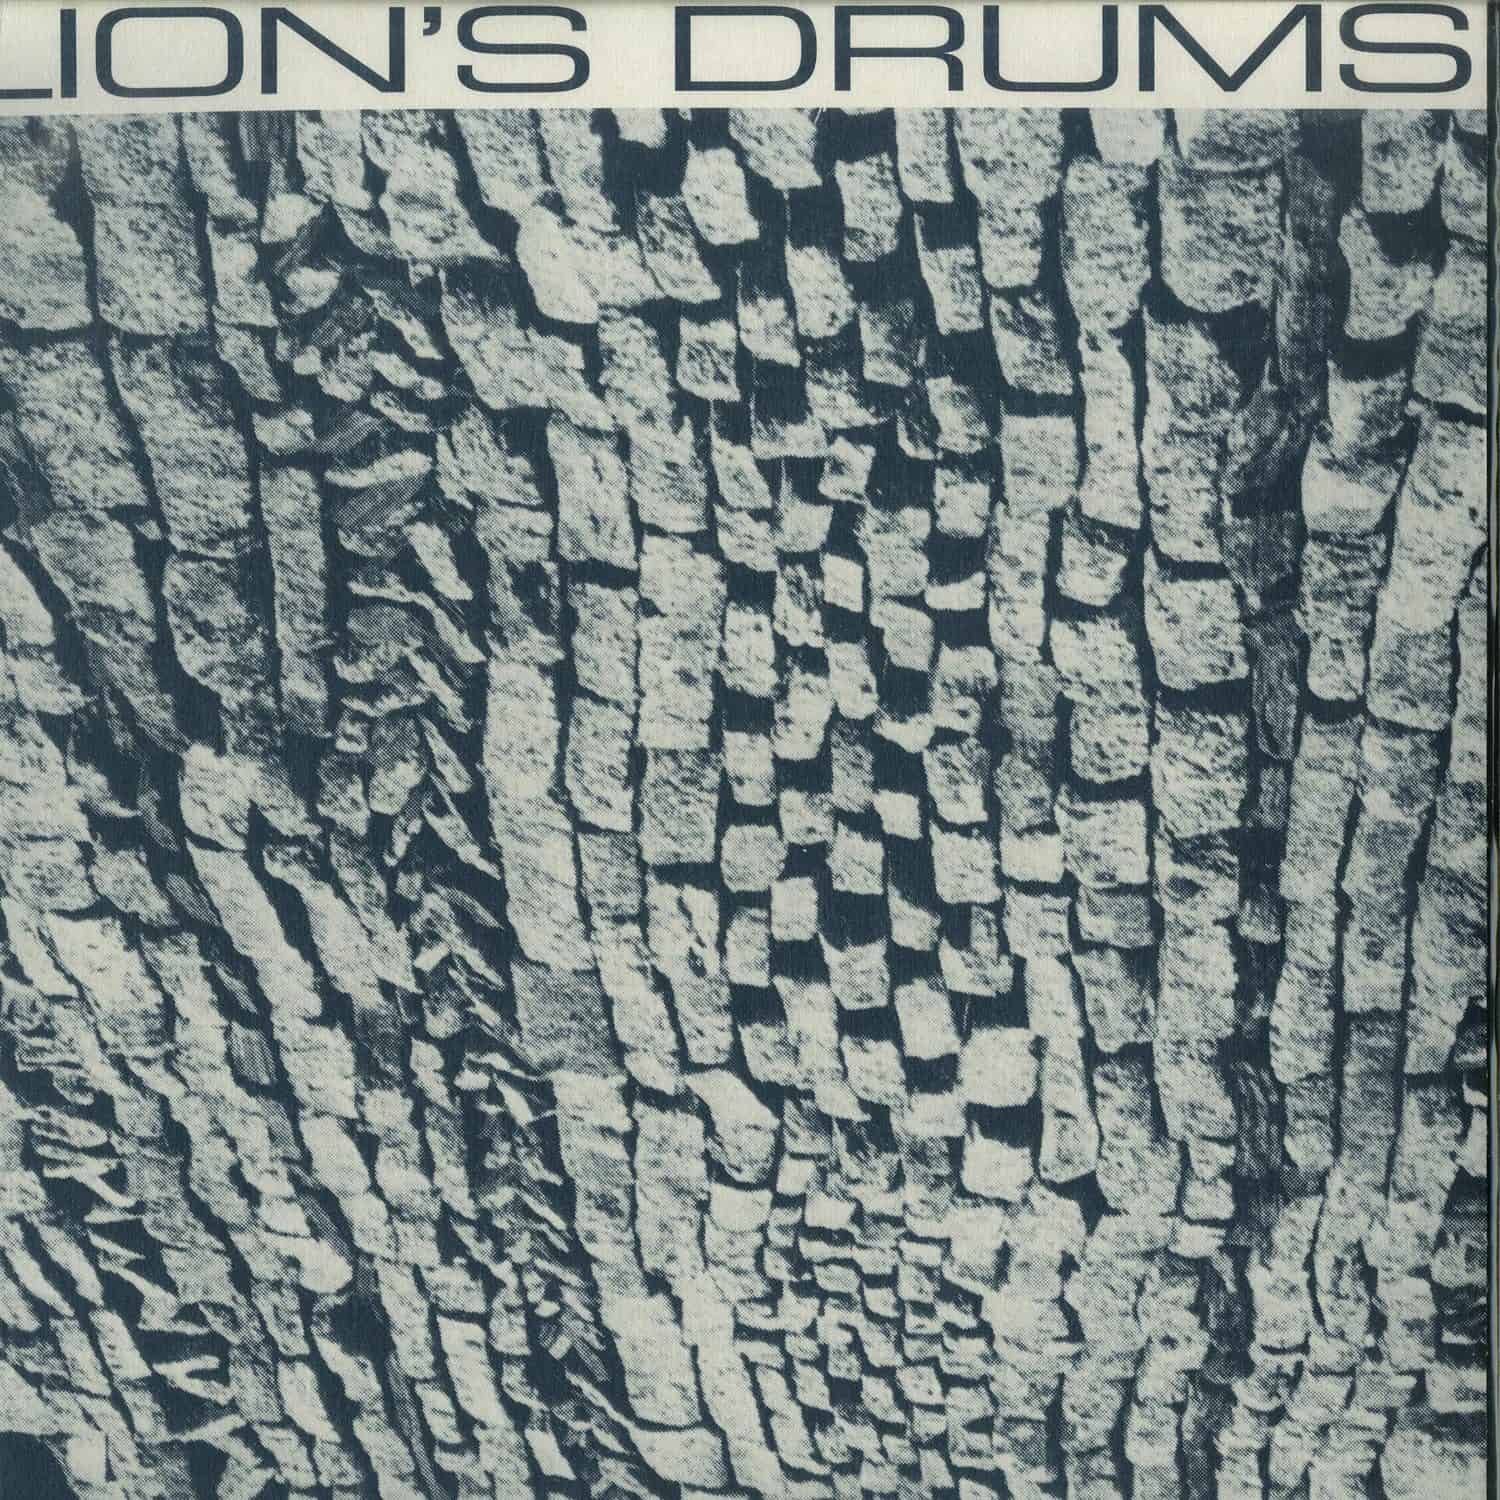 Lions Drums - -